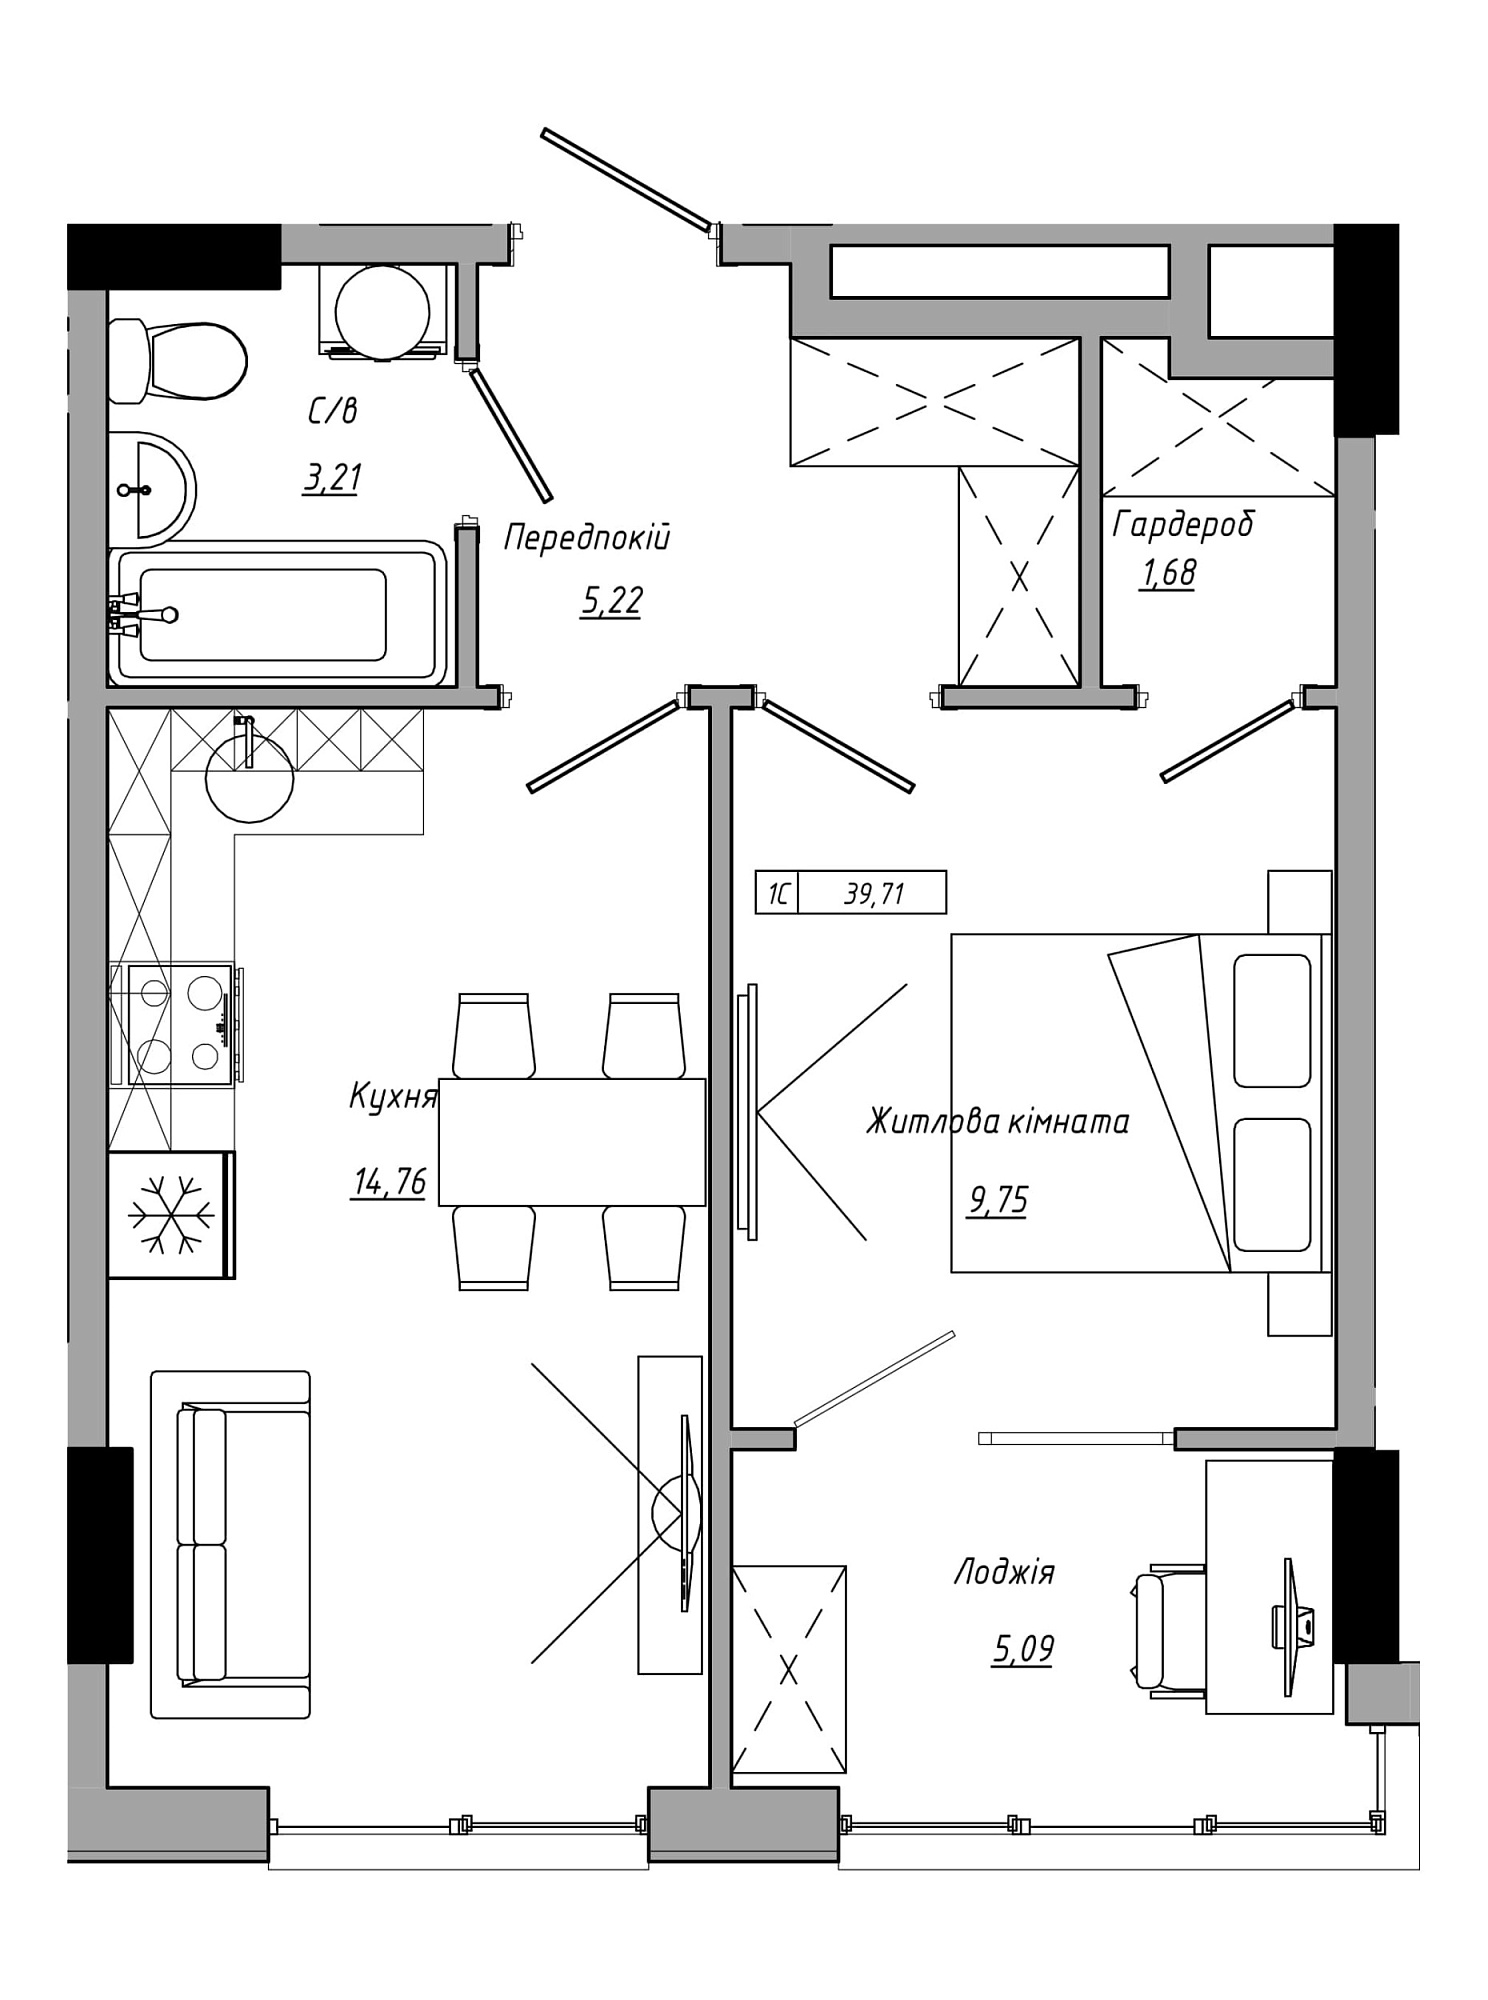 Планування 1-к квартира площею 39.71м2, AB-21-09/00021.